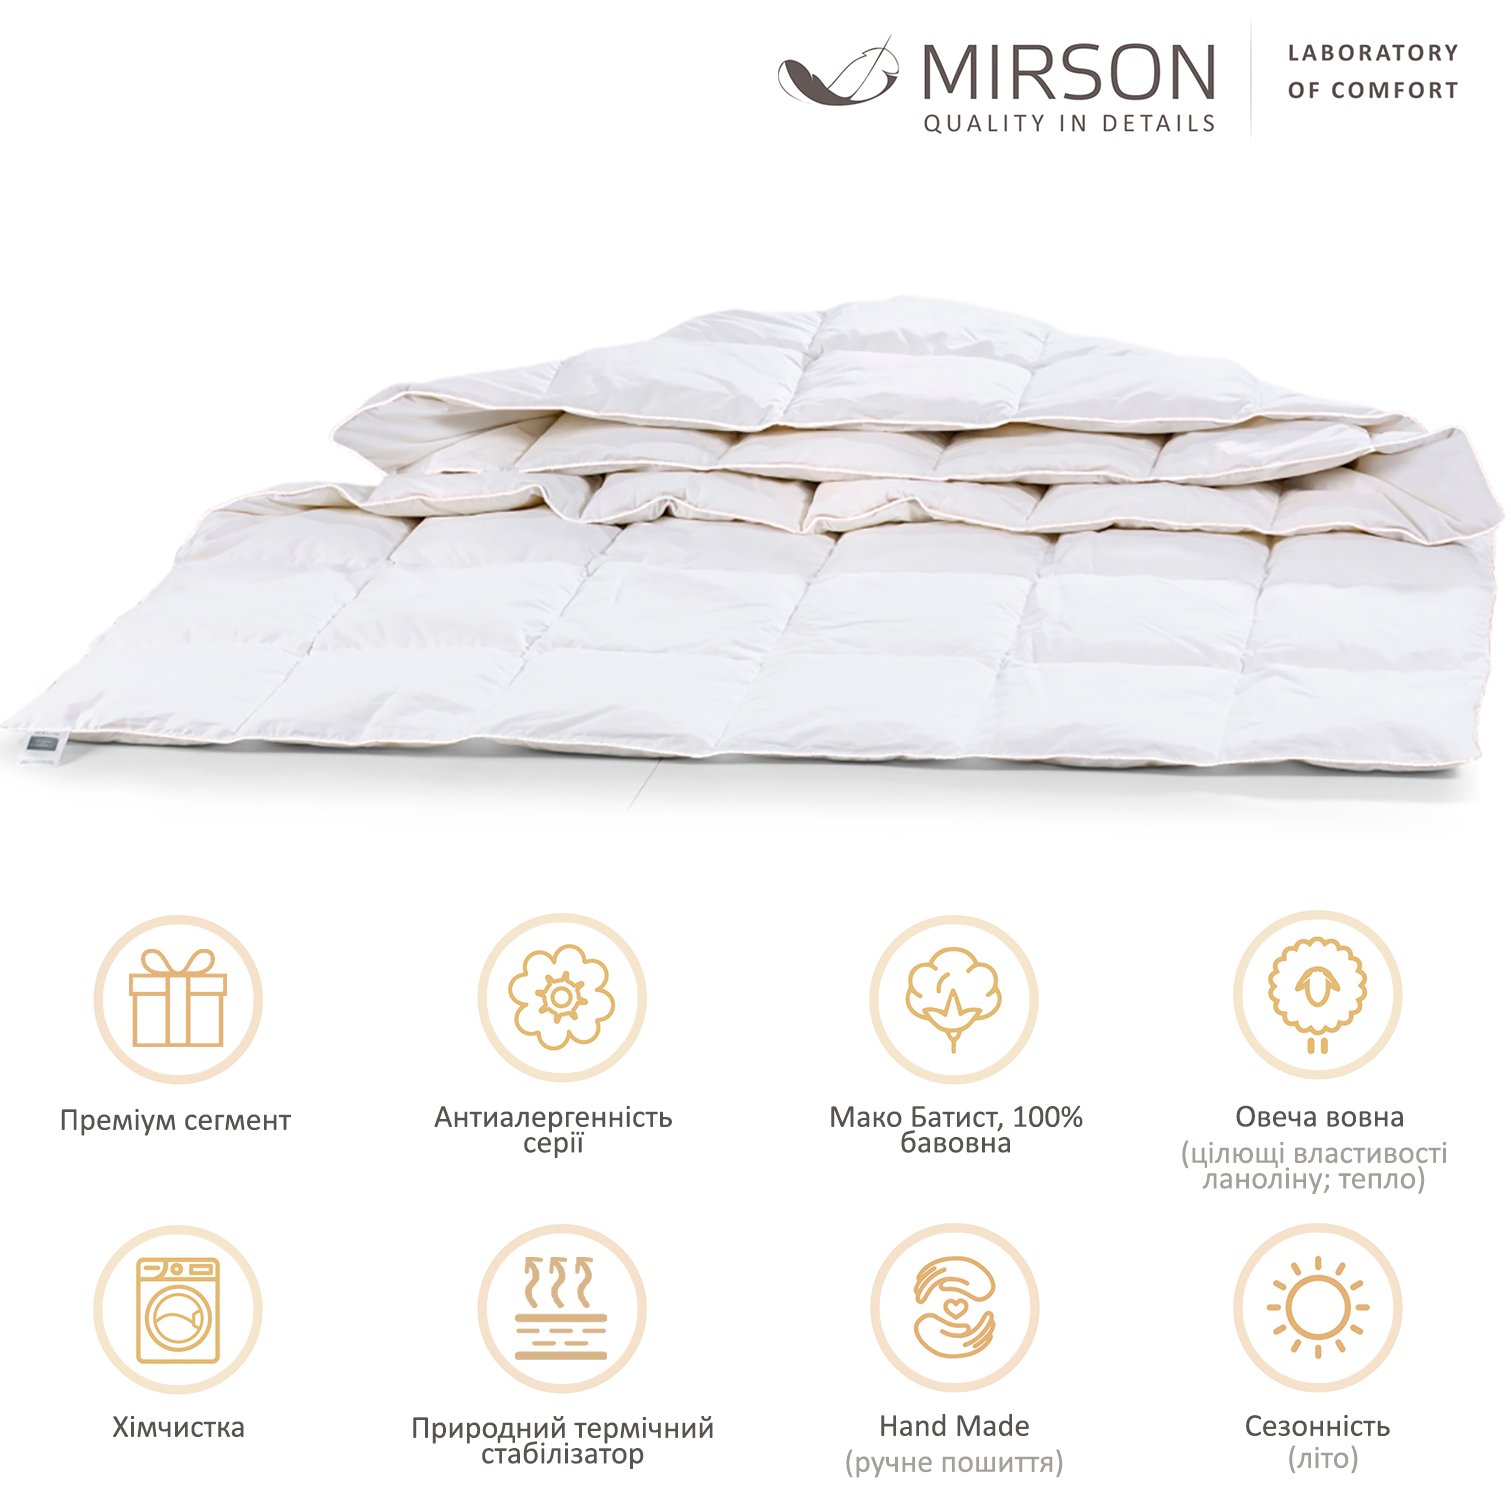 Одеяло шерстяное MirSon Luxury Exclusive №1363, летнее, 220x240 см, белое - фото 4